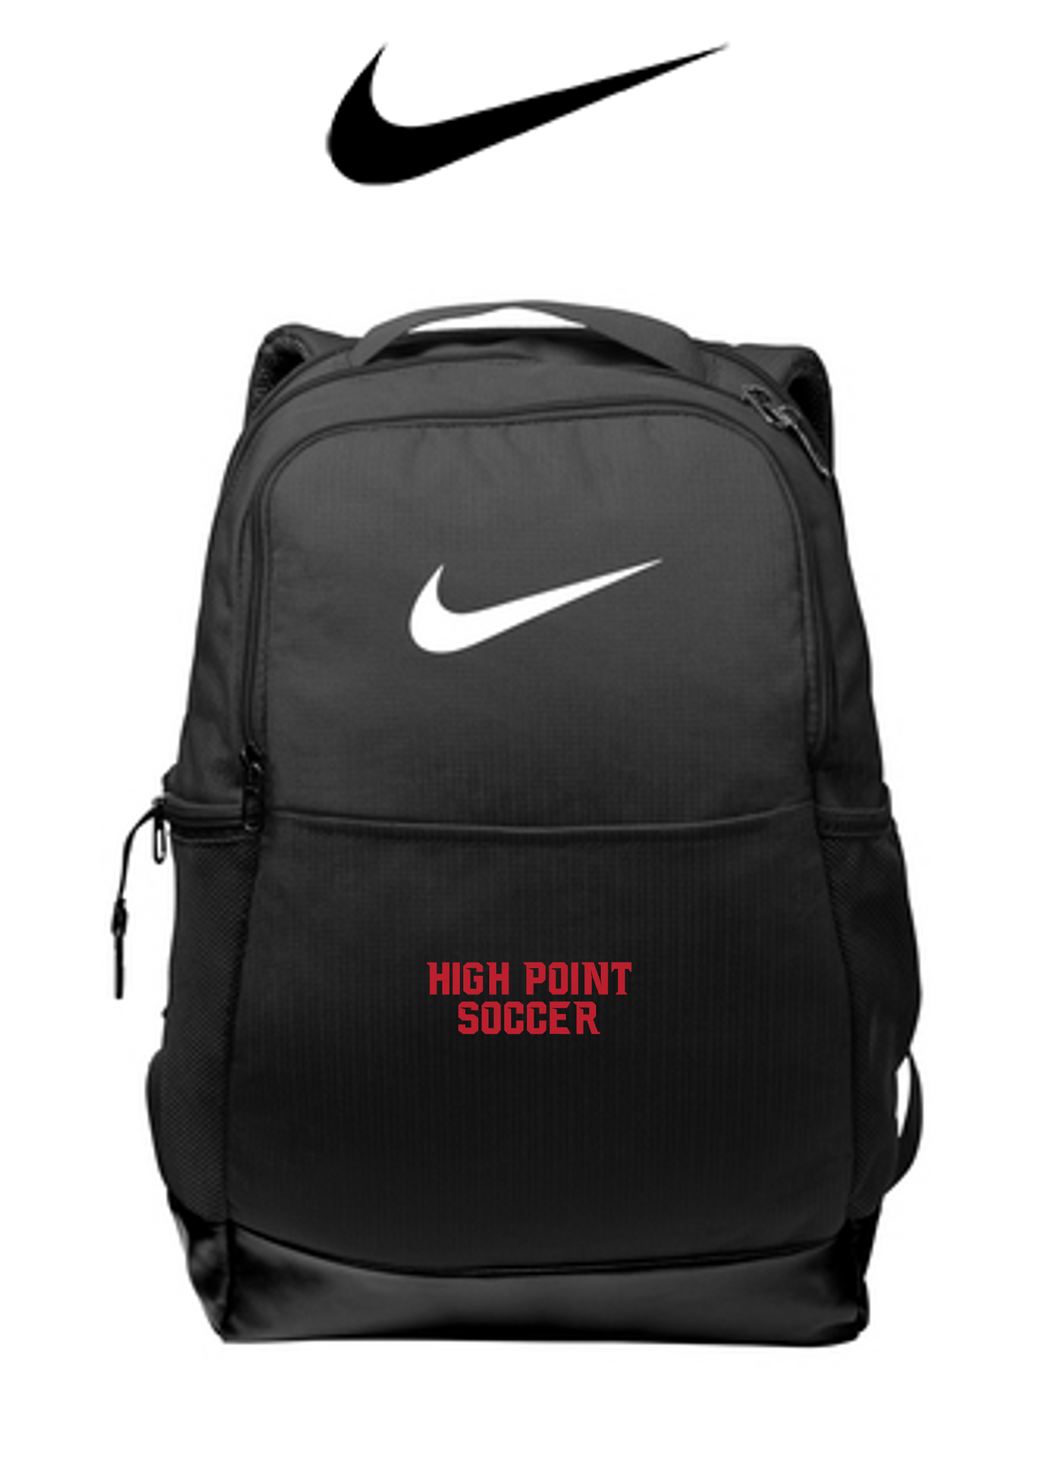 *Nike Brasilia Medium Backpack - High Point Girls Soccer